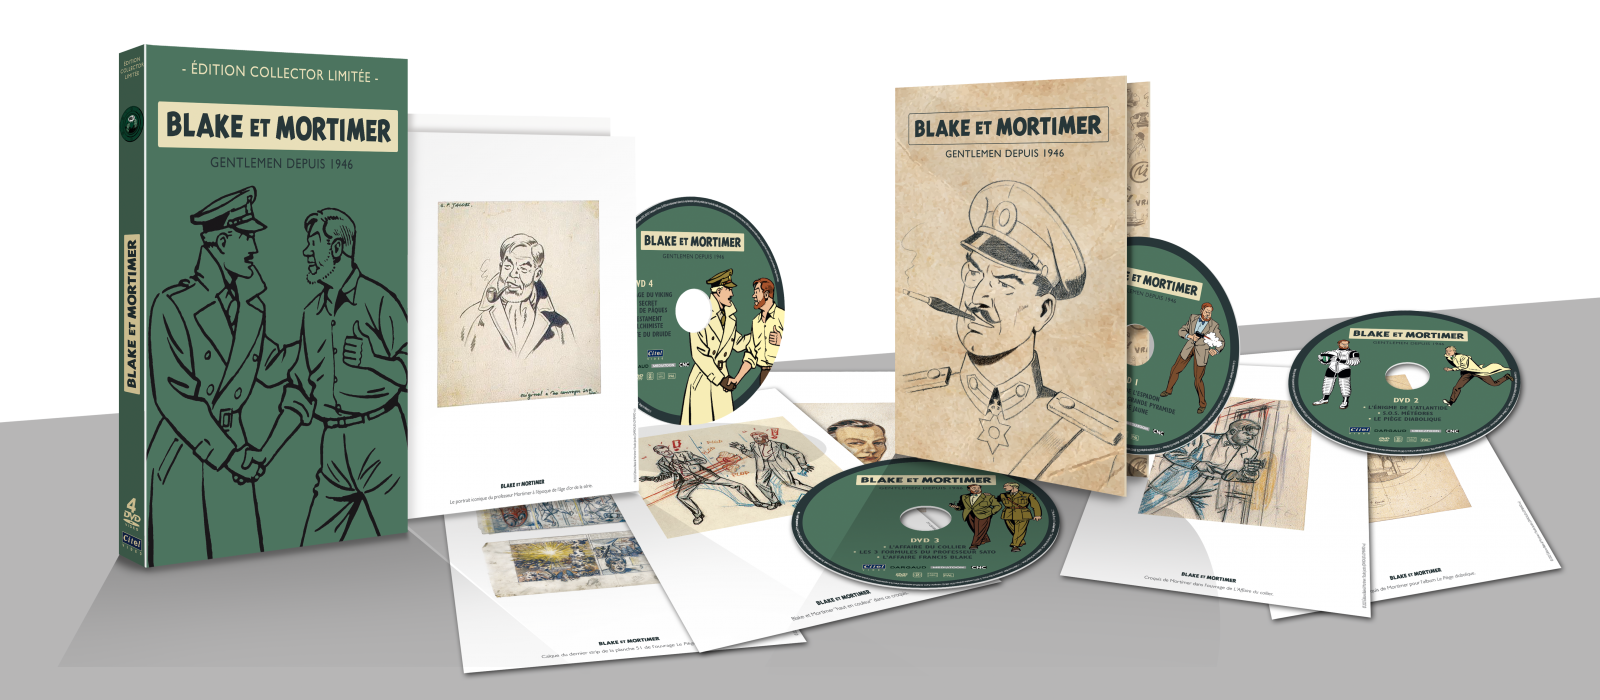 vragenlijst deze Genealogie BLAKE ET MORTIMER - L'INTEGRALE DVD - Complete collections and box sets